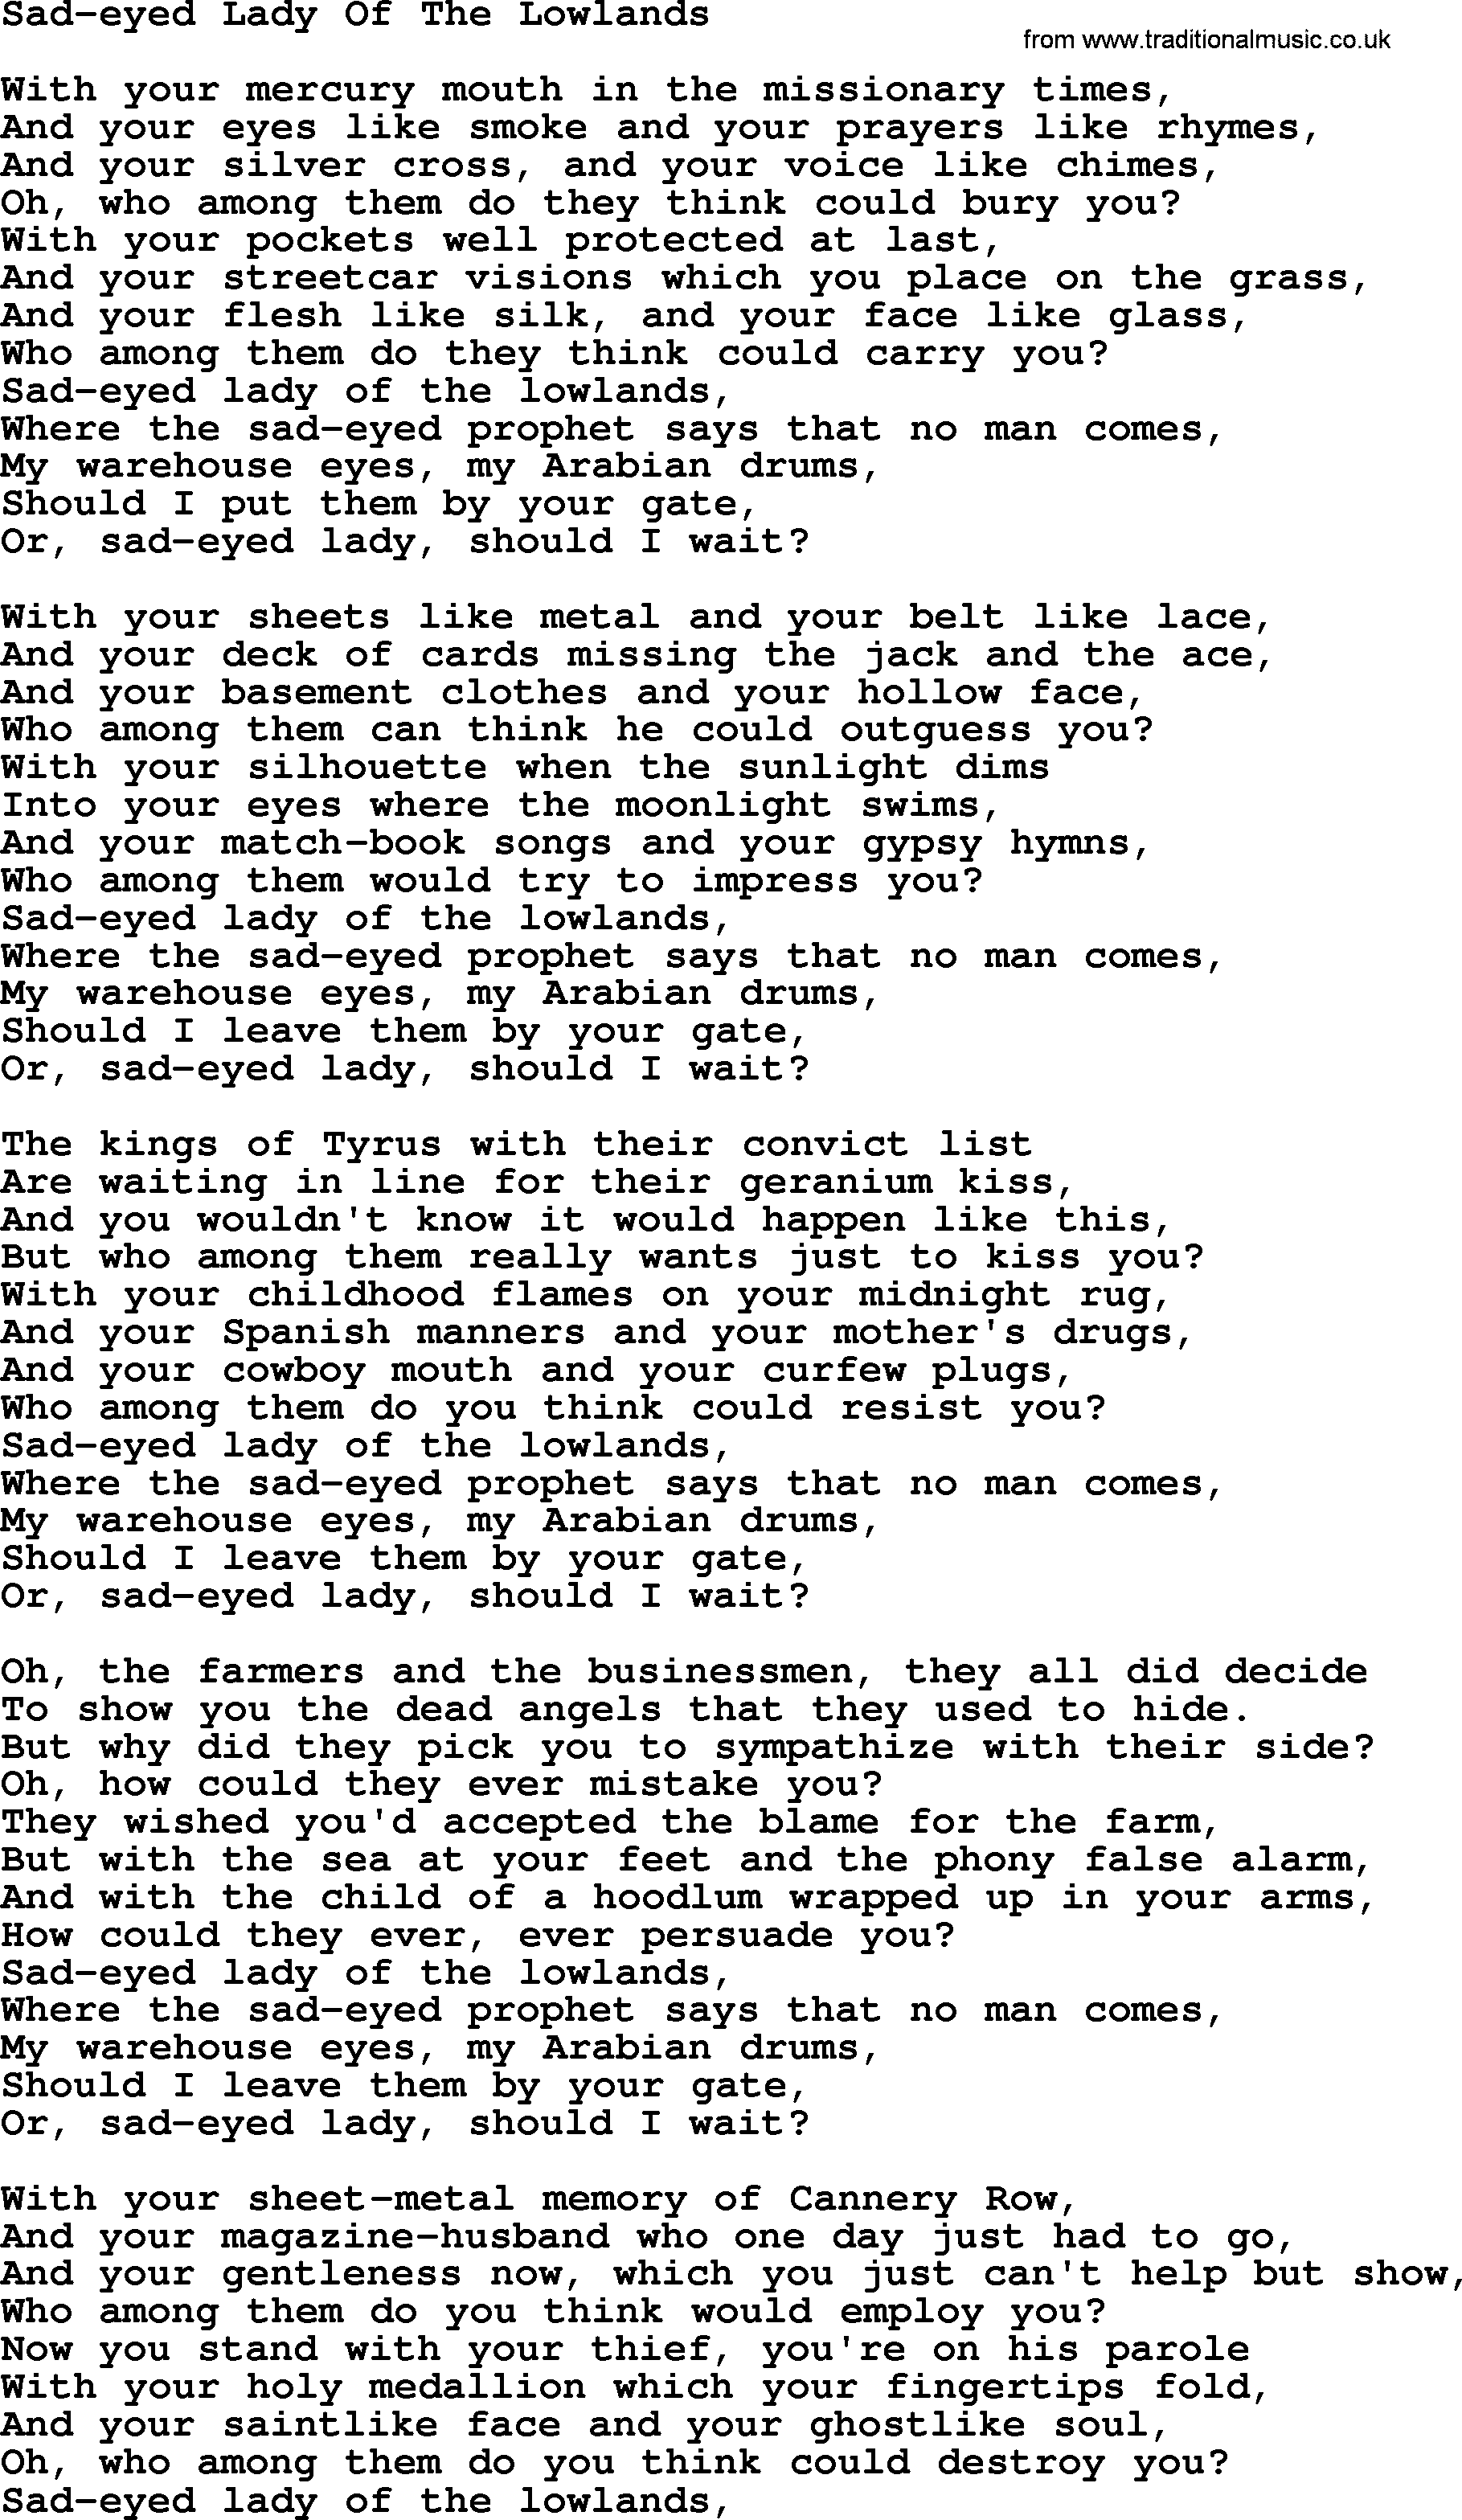 Joan Baez song Sad-eyed Lady Of The Lowlands, lyrics